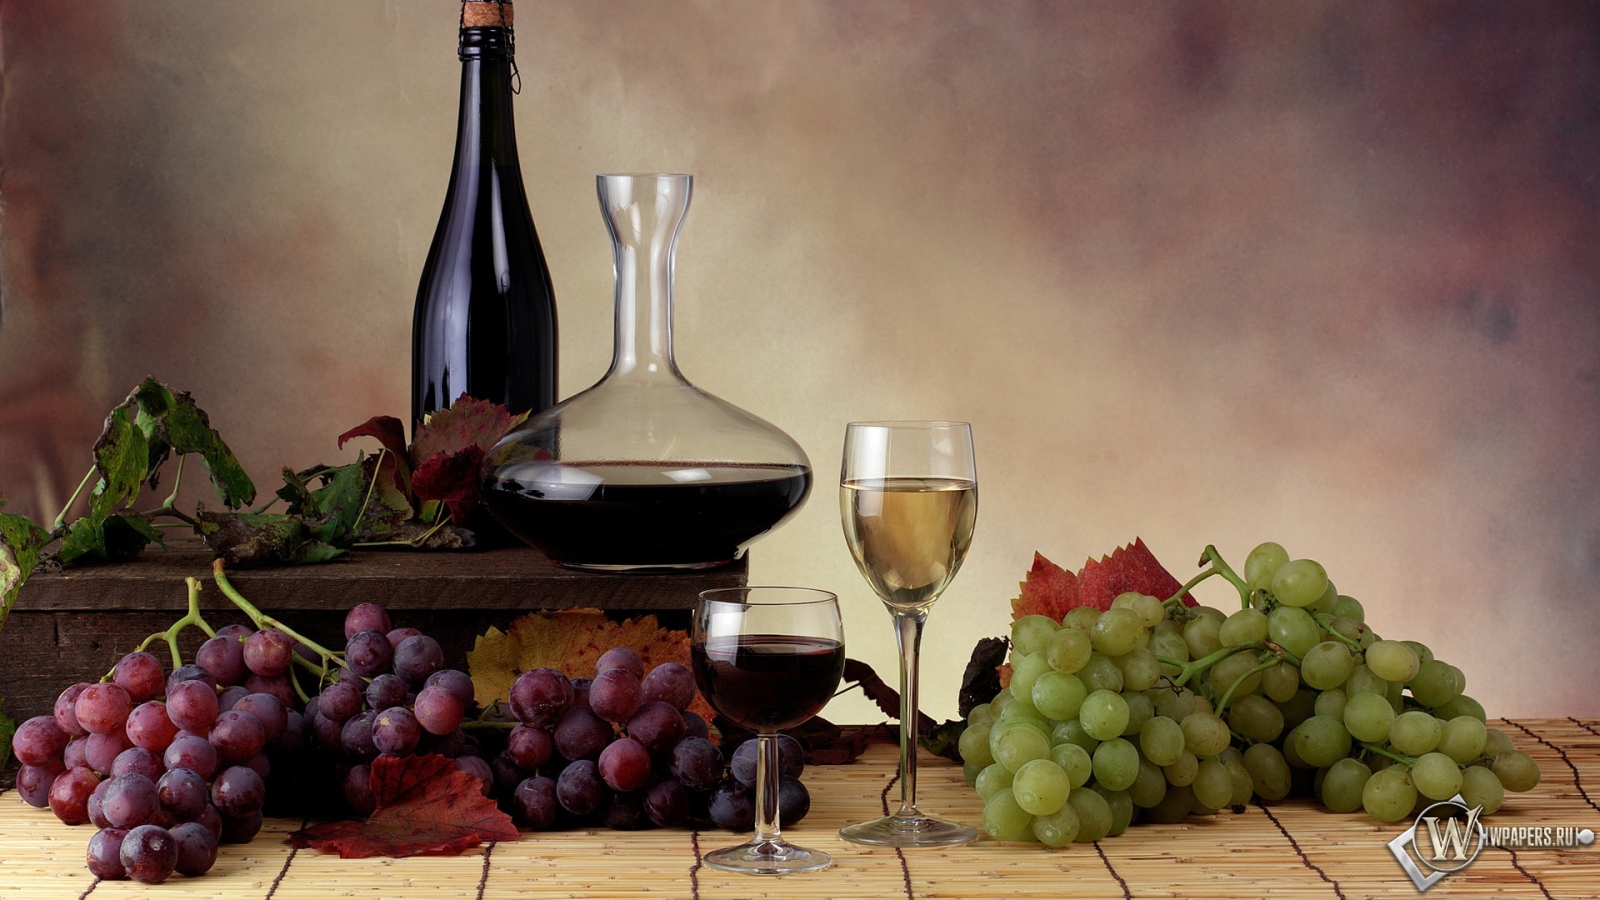 Вино и виноград 1600x900